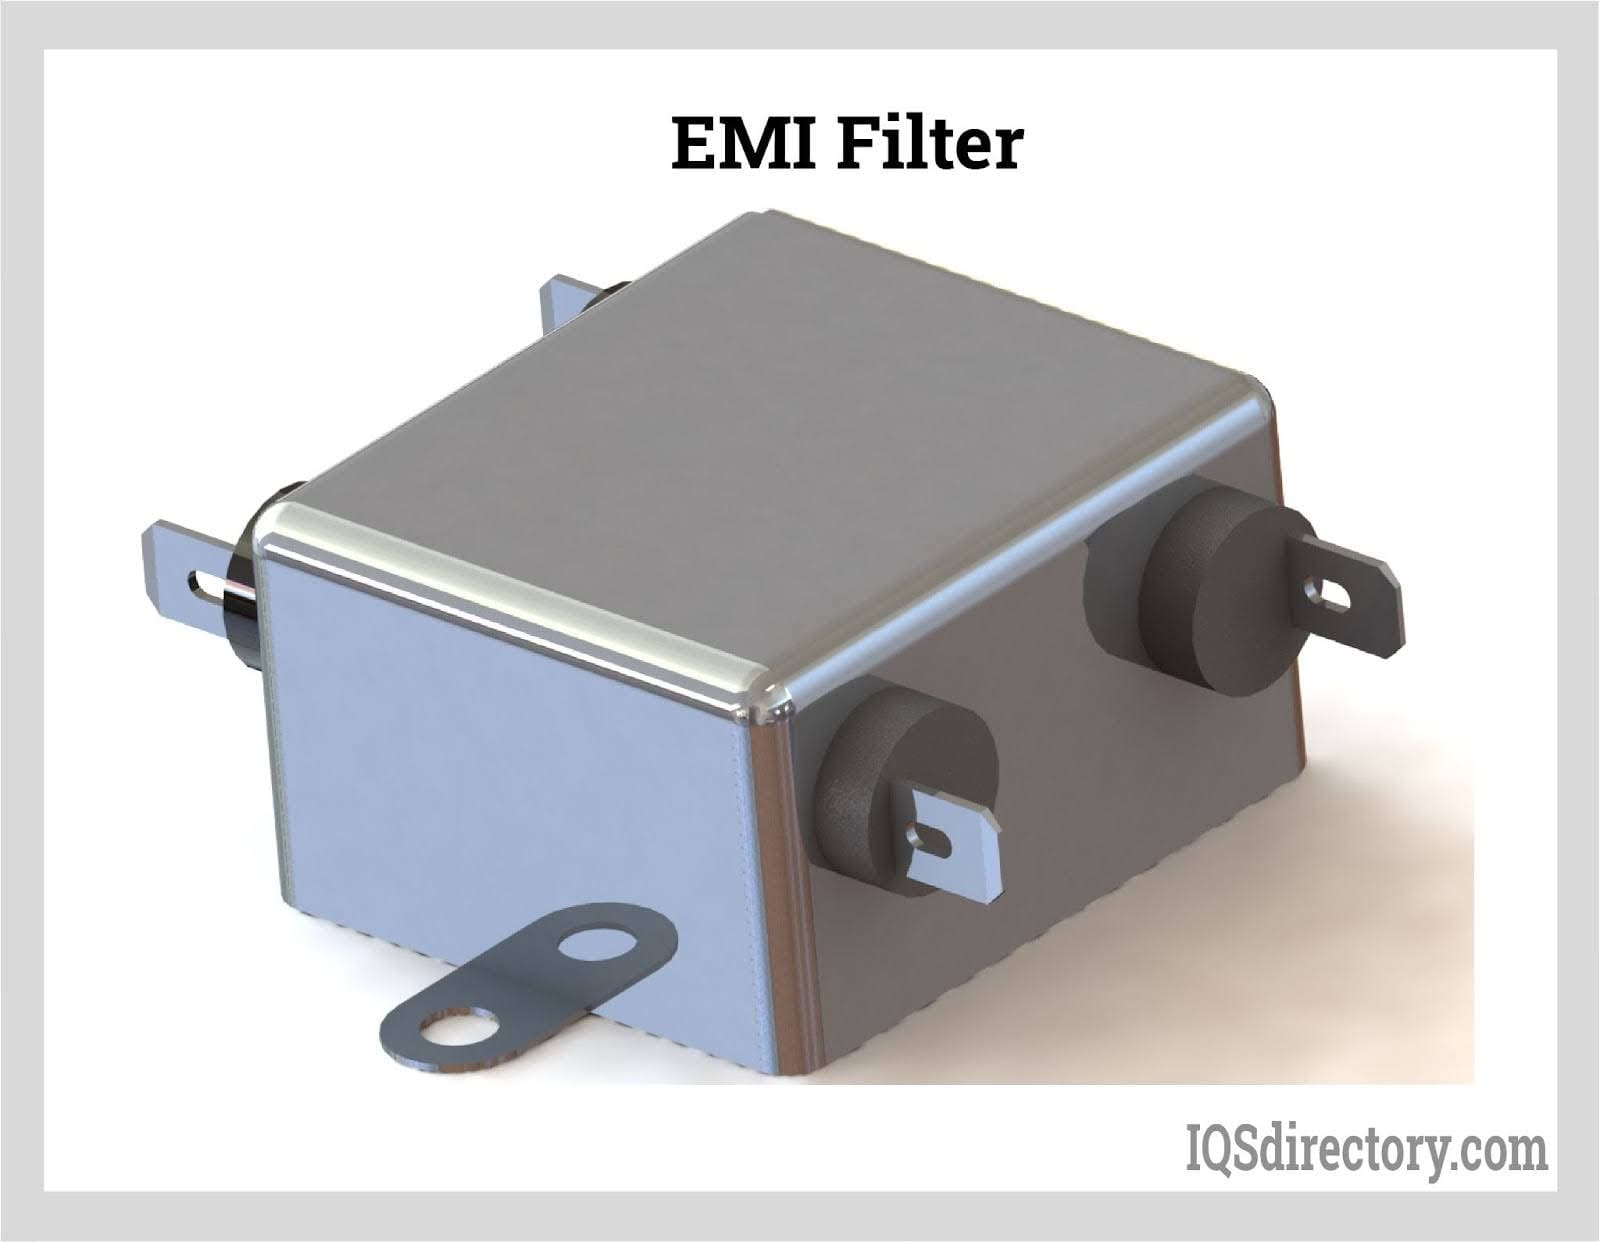 EMI Filter